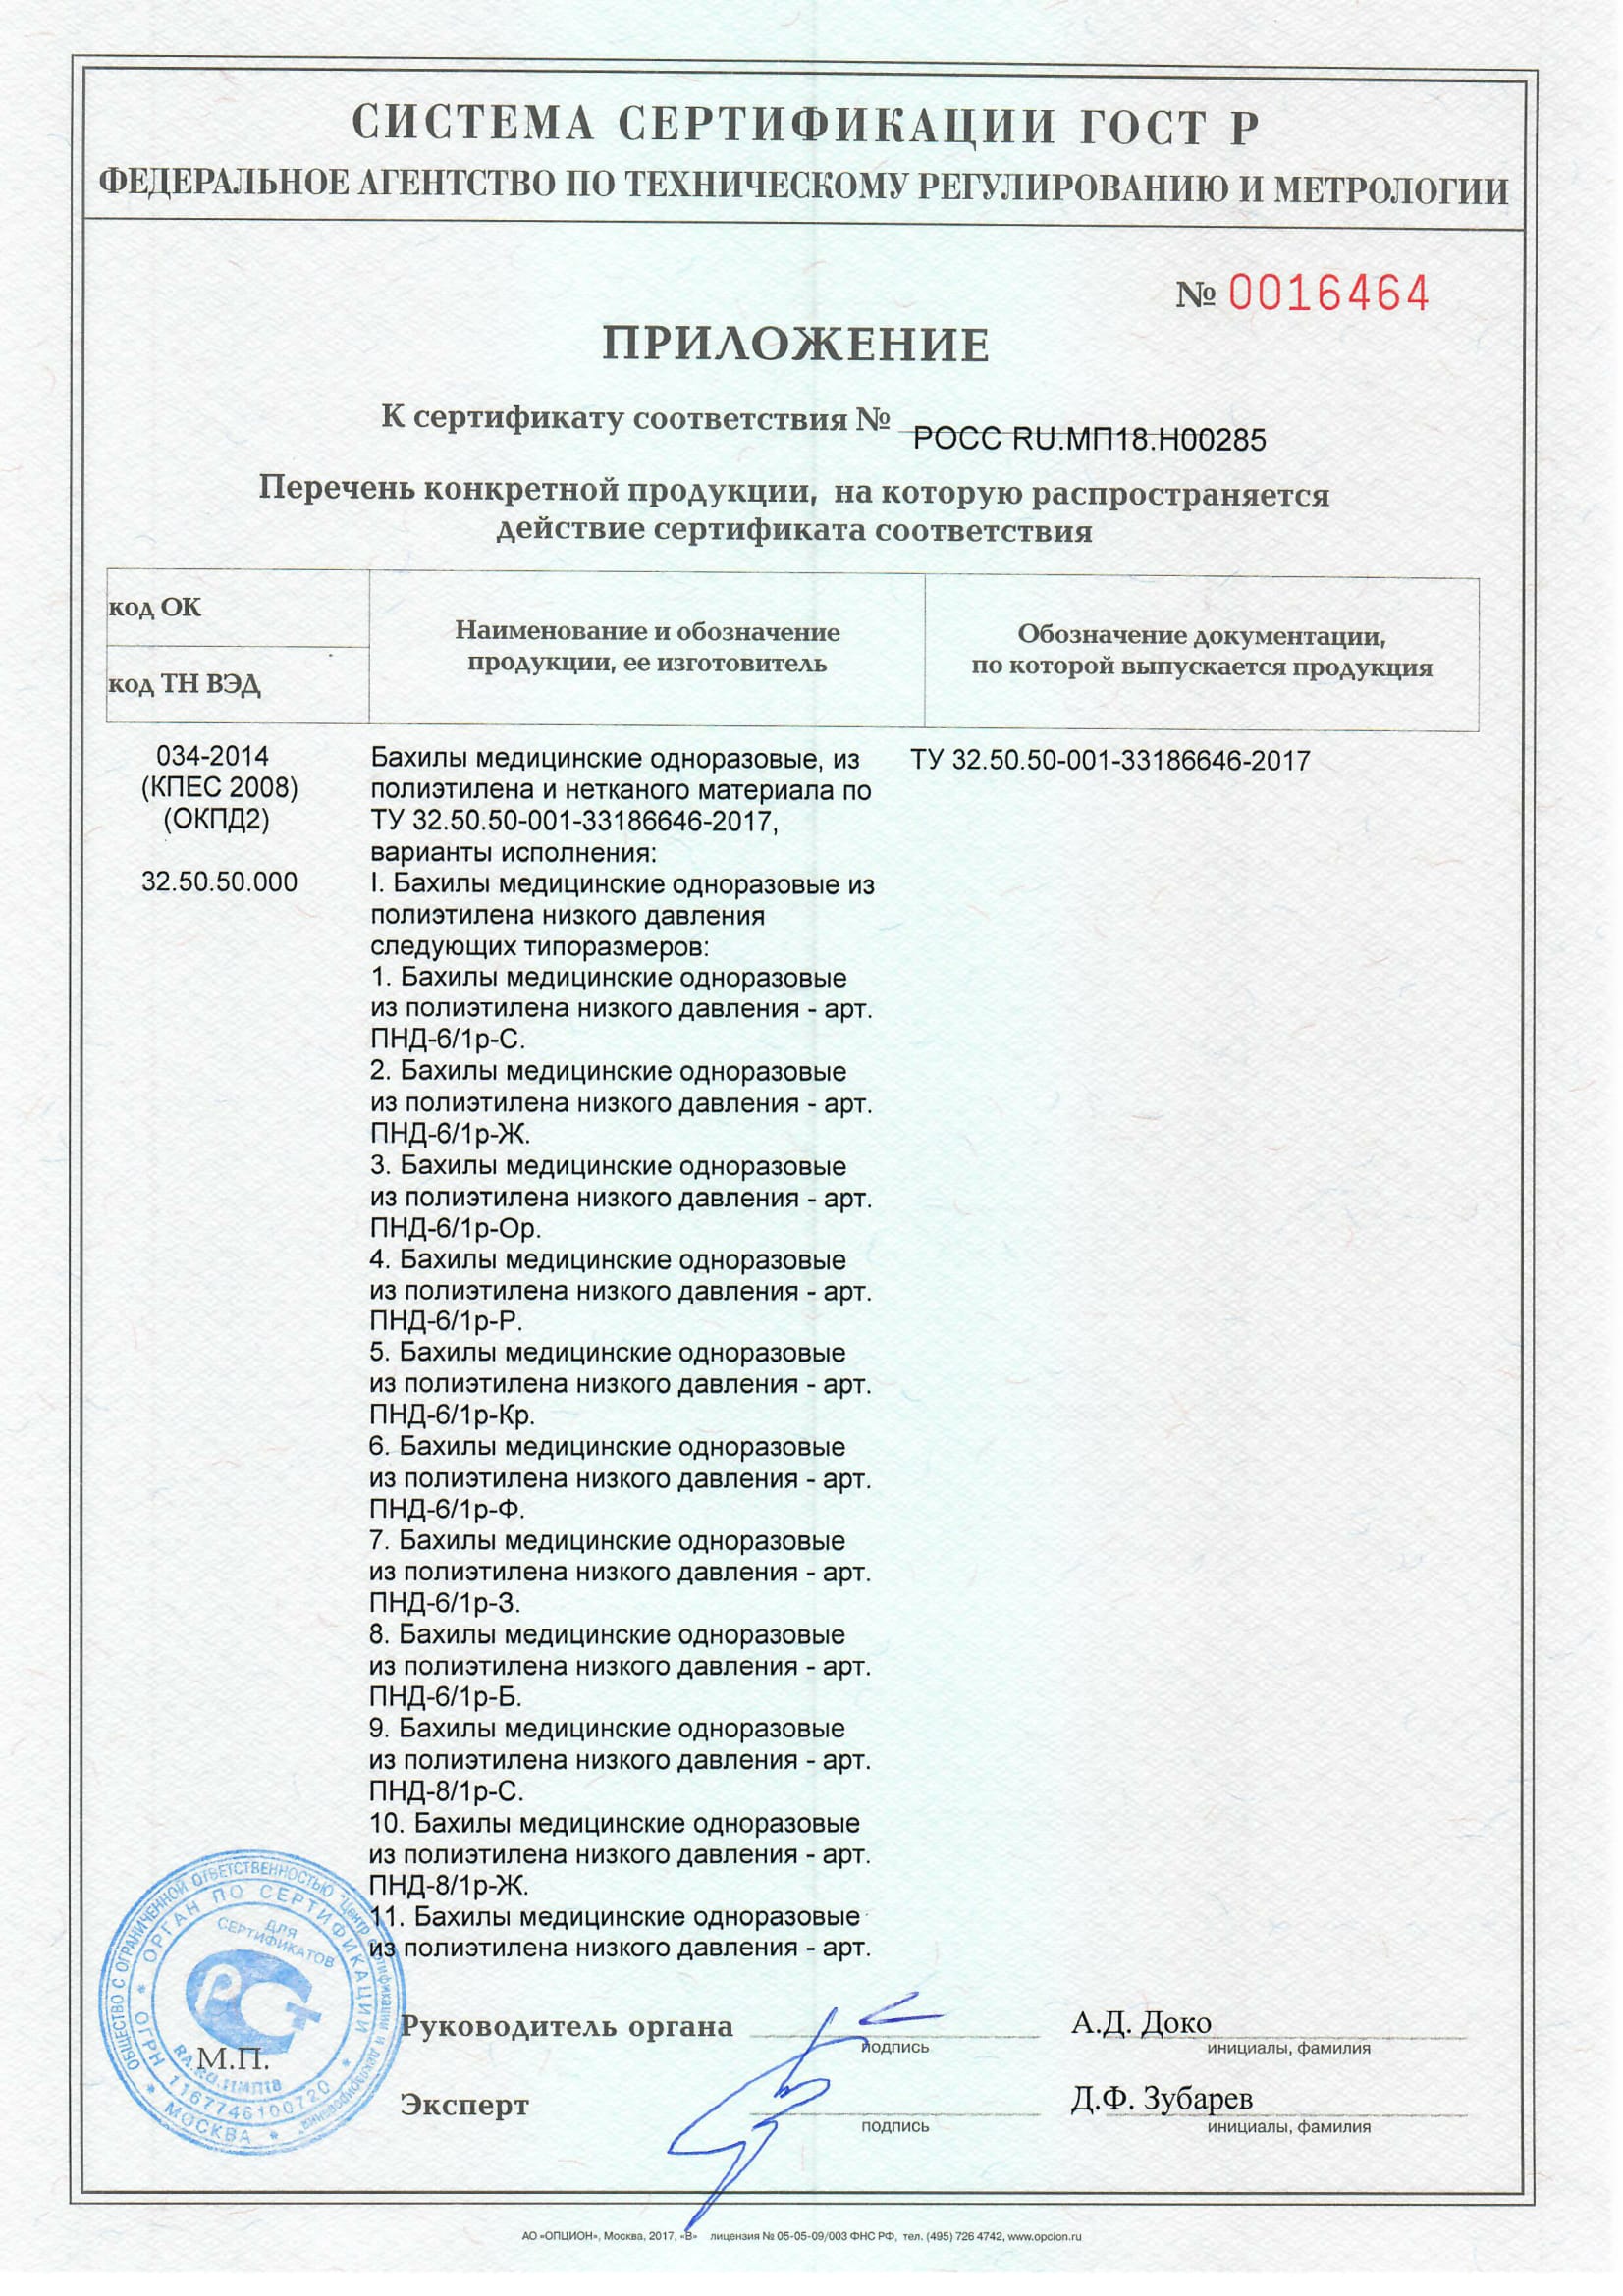 Бахилы медиц. Сертификат-соответствия-до 14.11.2020-2